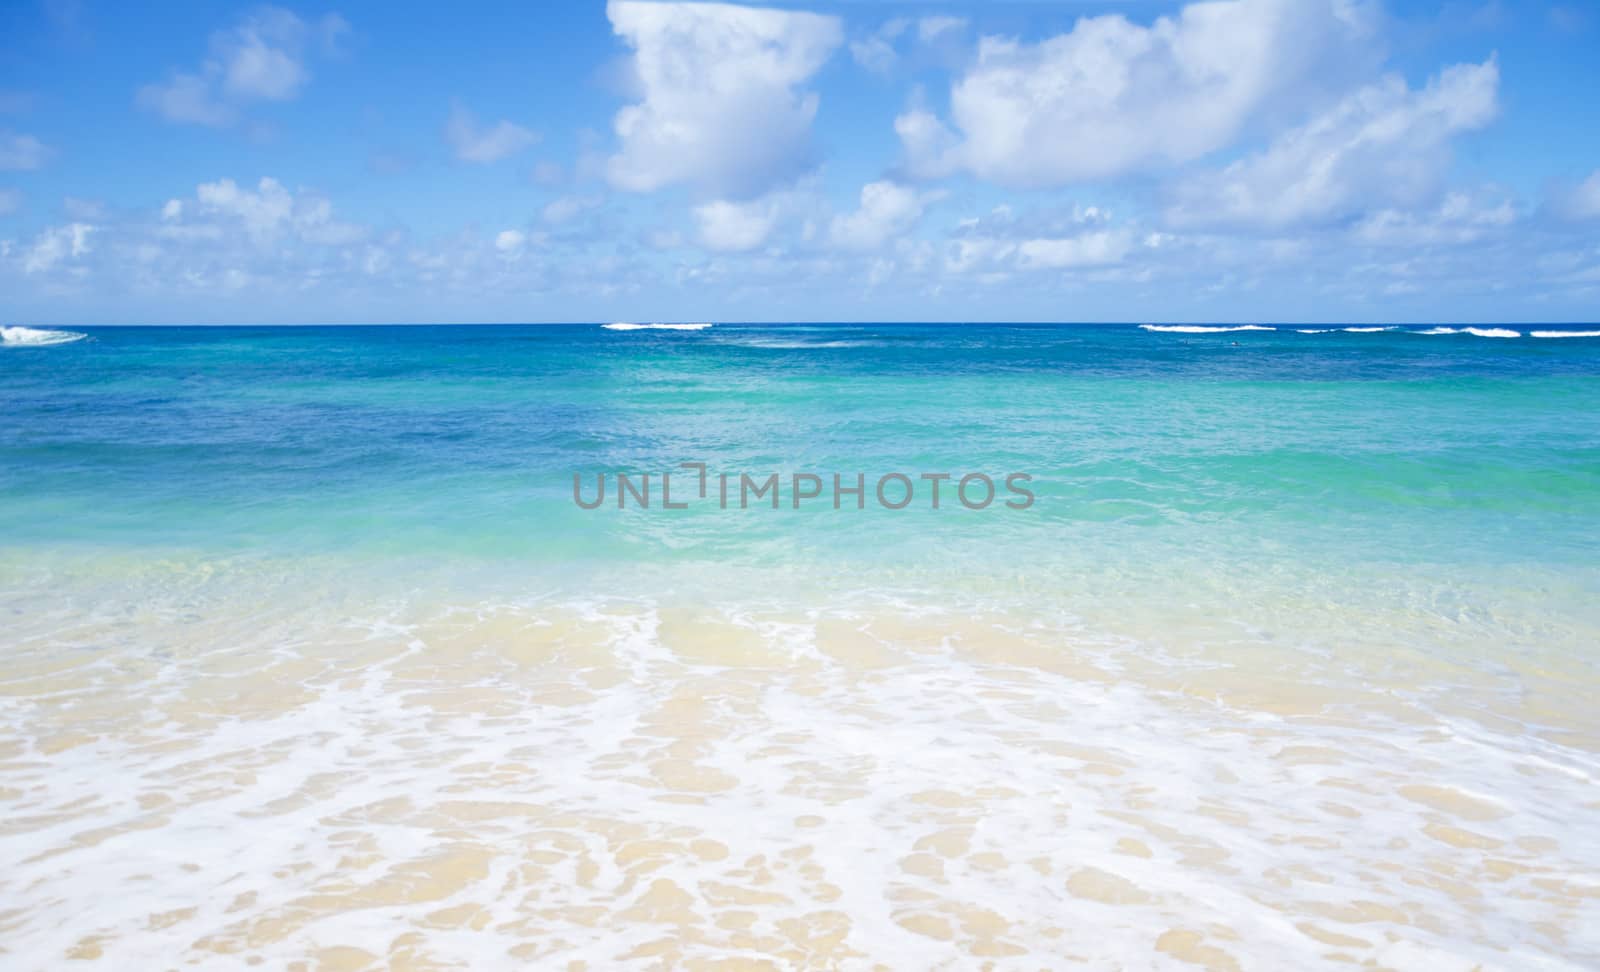 Gentle waves on sandy beach in Hawaii by EllenSmile